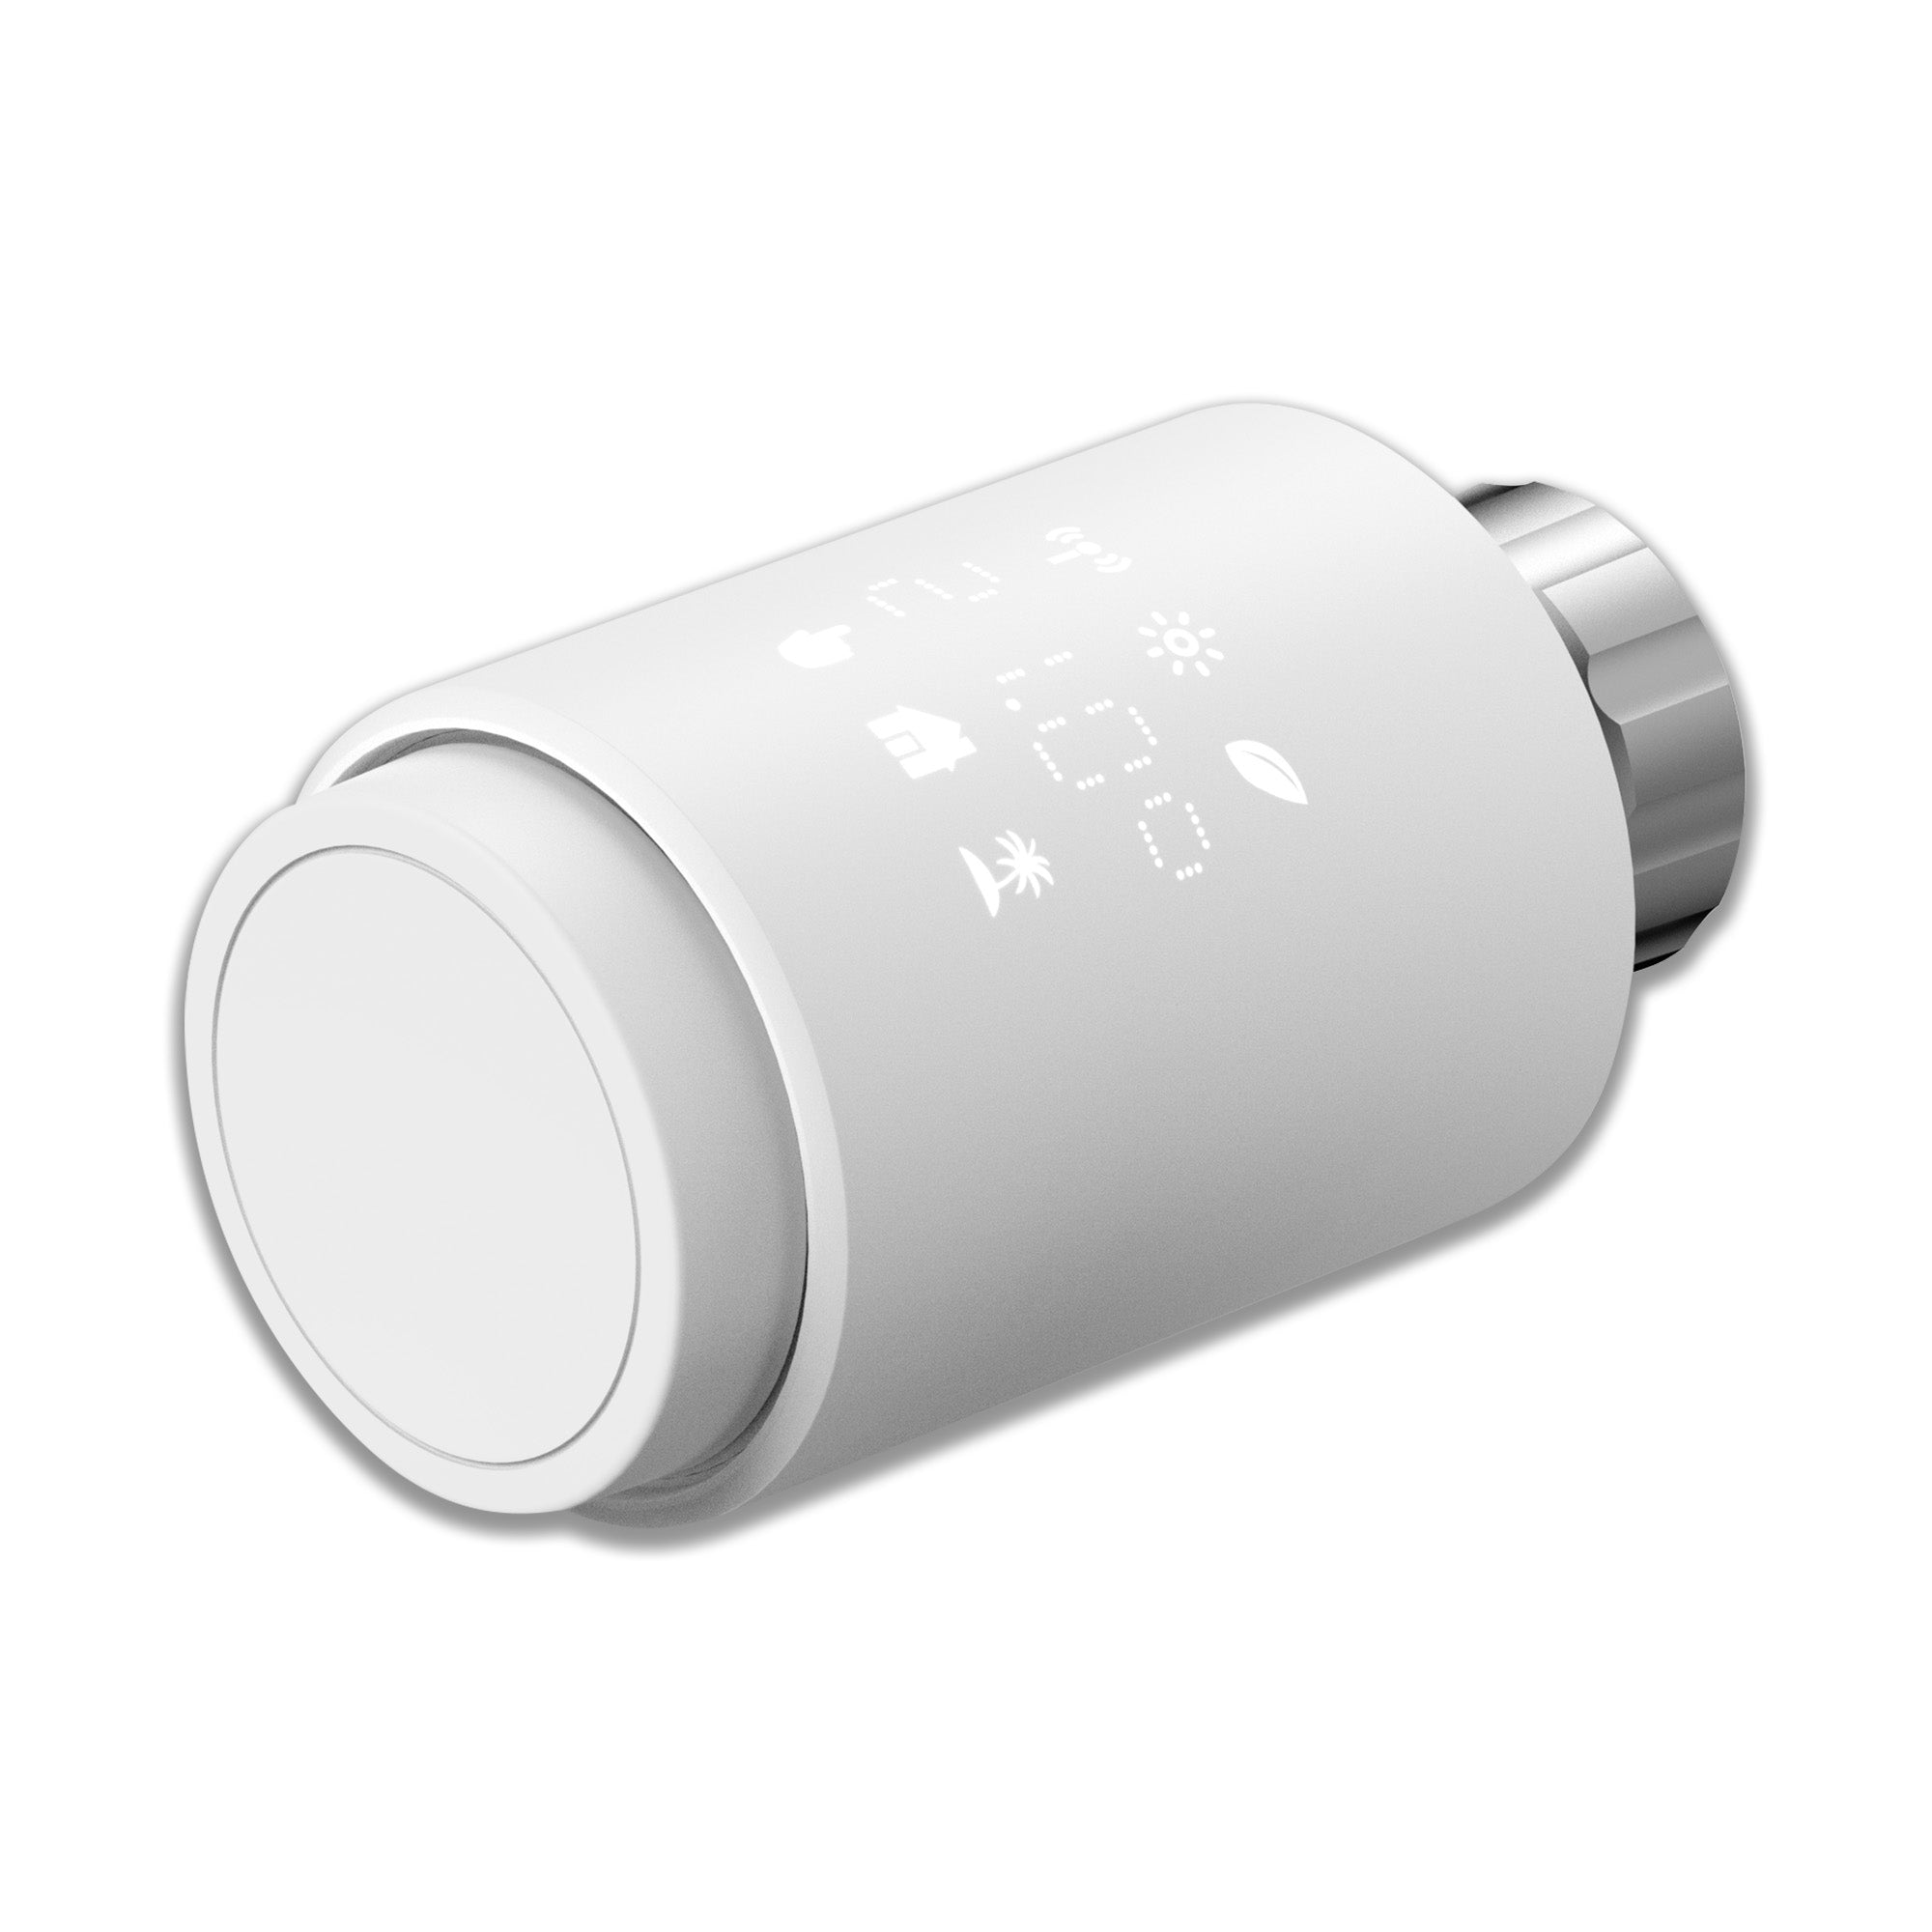 Smartes Thermostat von Rollei – Rollei